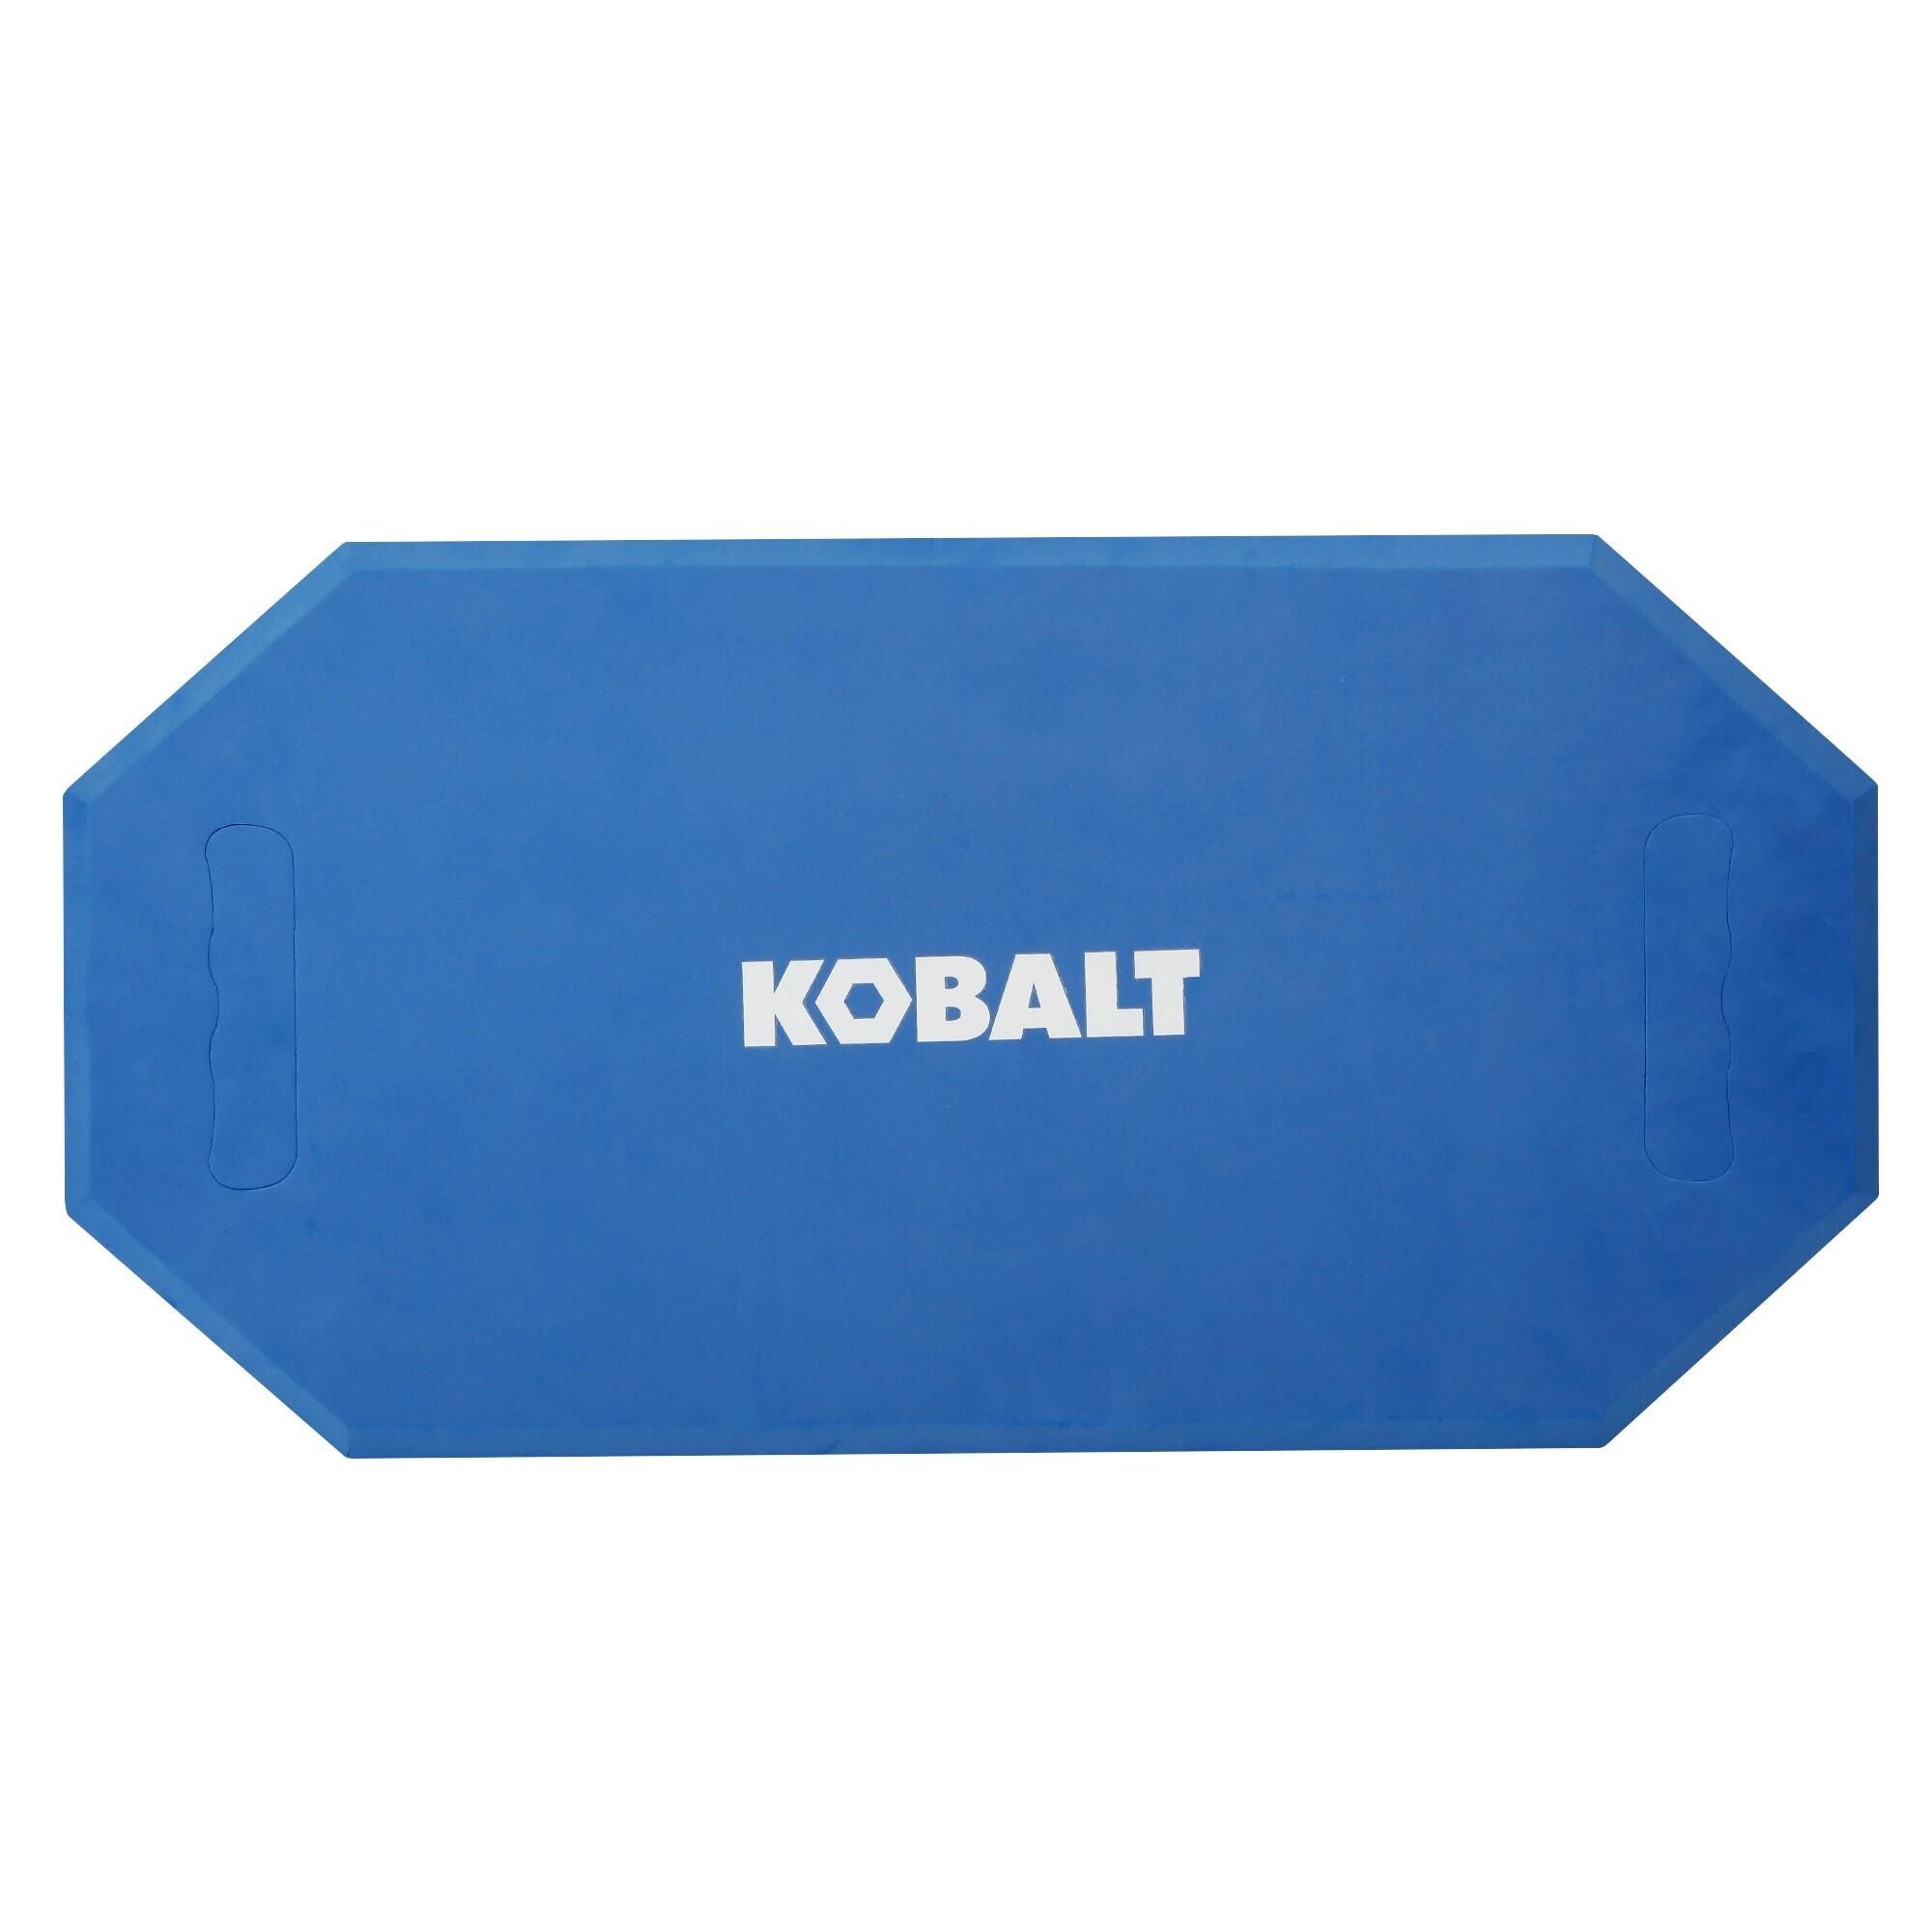 $13  Kobalt Blue Foam Kneeling Pad 23.6x11.8-in